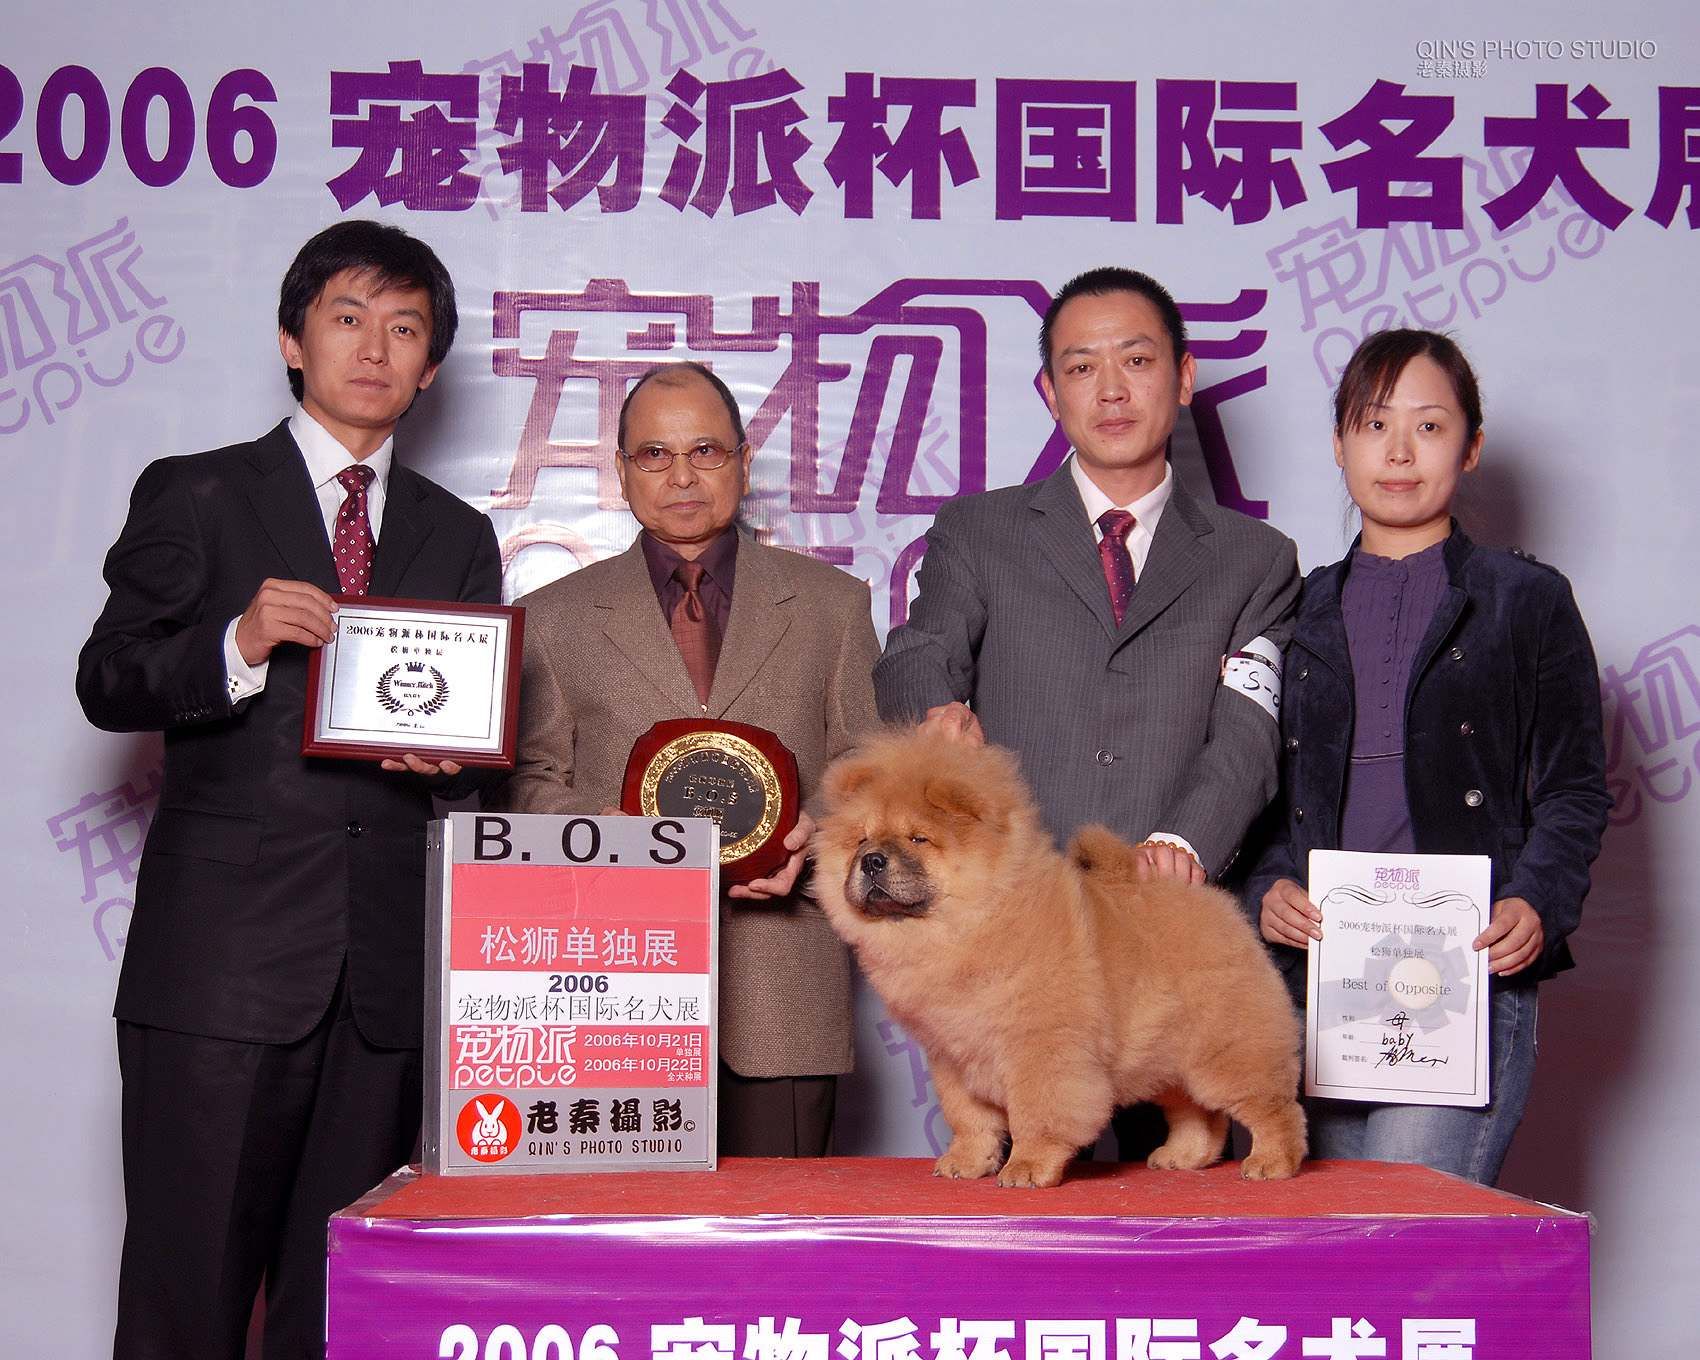 FIRST JJ在2006年宠物派杯松狮单独展获得全场BOS